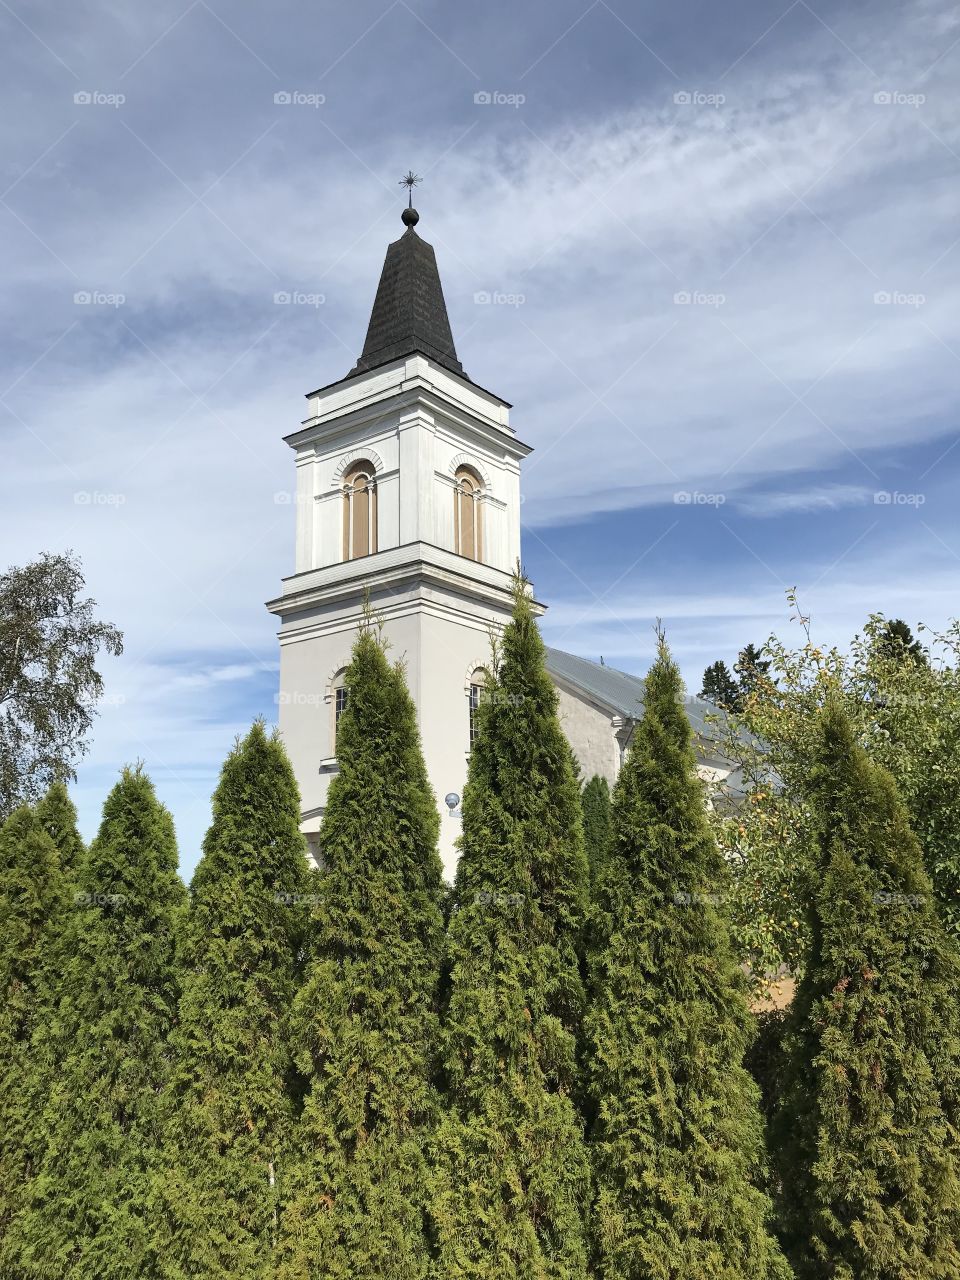 St. Mary's Kirche (finnian Marian kirkko (Hamina)) is a Lutheran church in Hamina. Hamina,Suomi,Finland.Город Хамина,Финляндия 🇫🇮